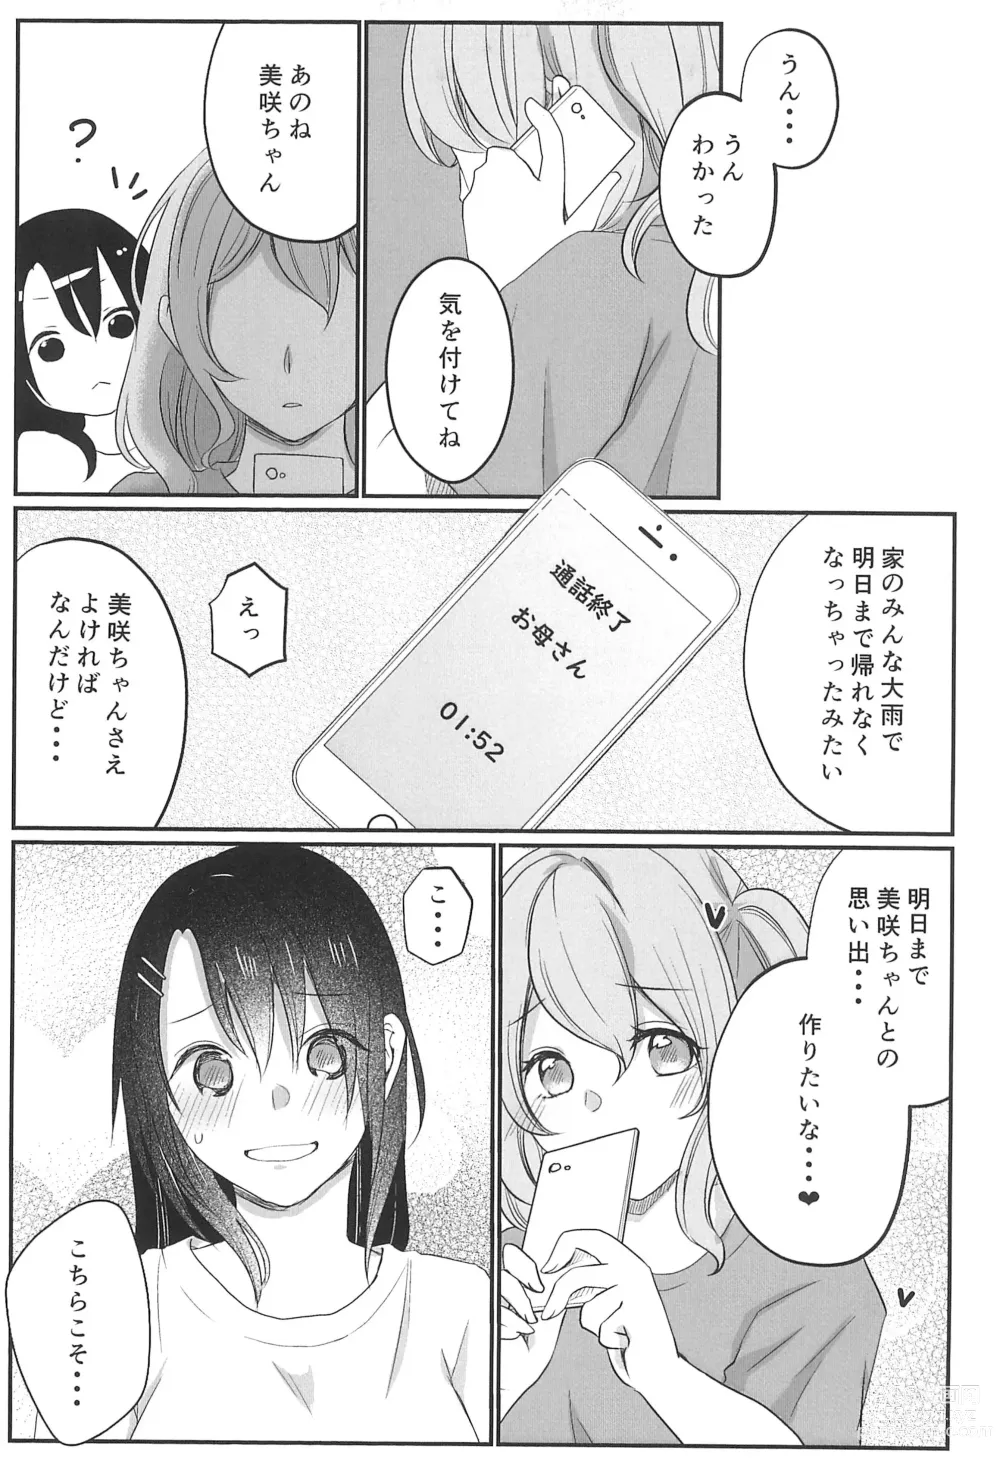 Page 29 of doujinshi Kitto Sonna Natsu no Hi no Omoide